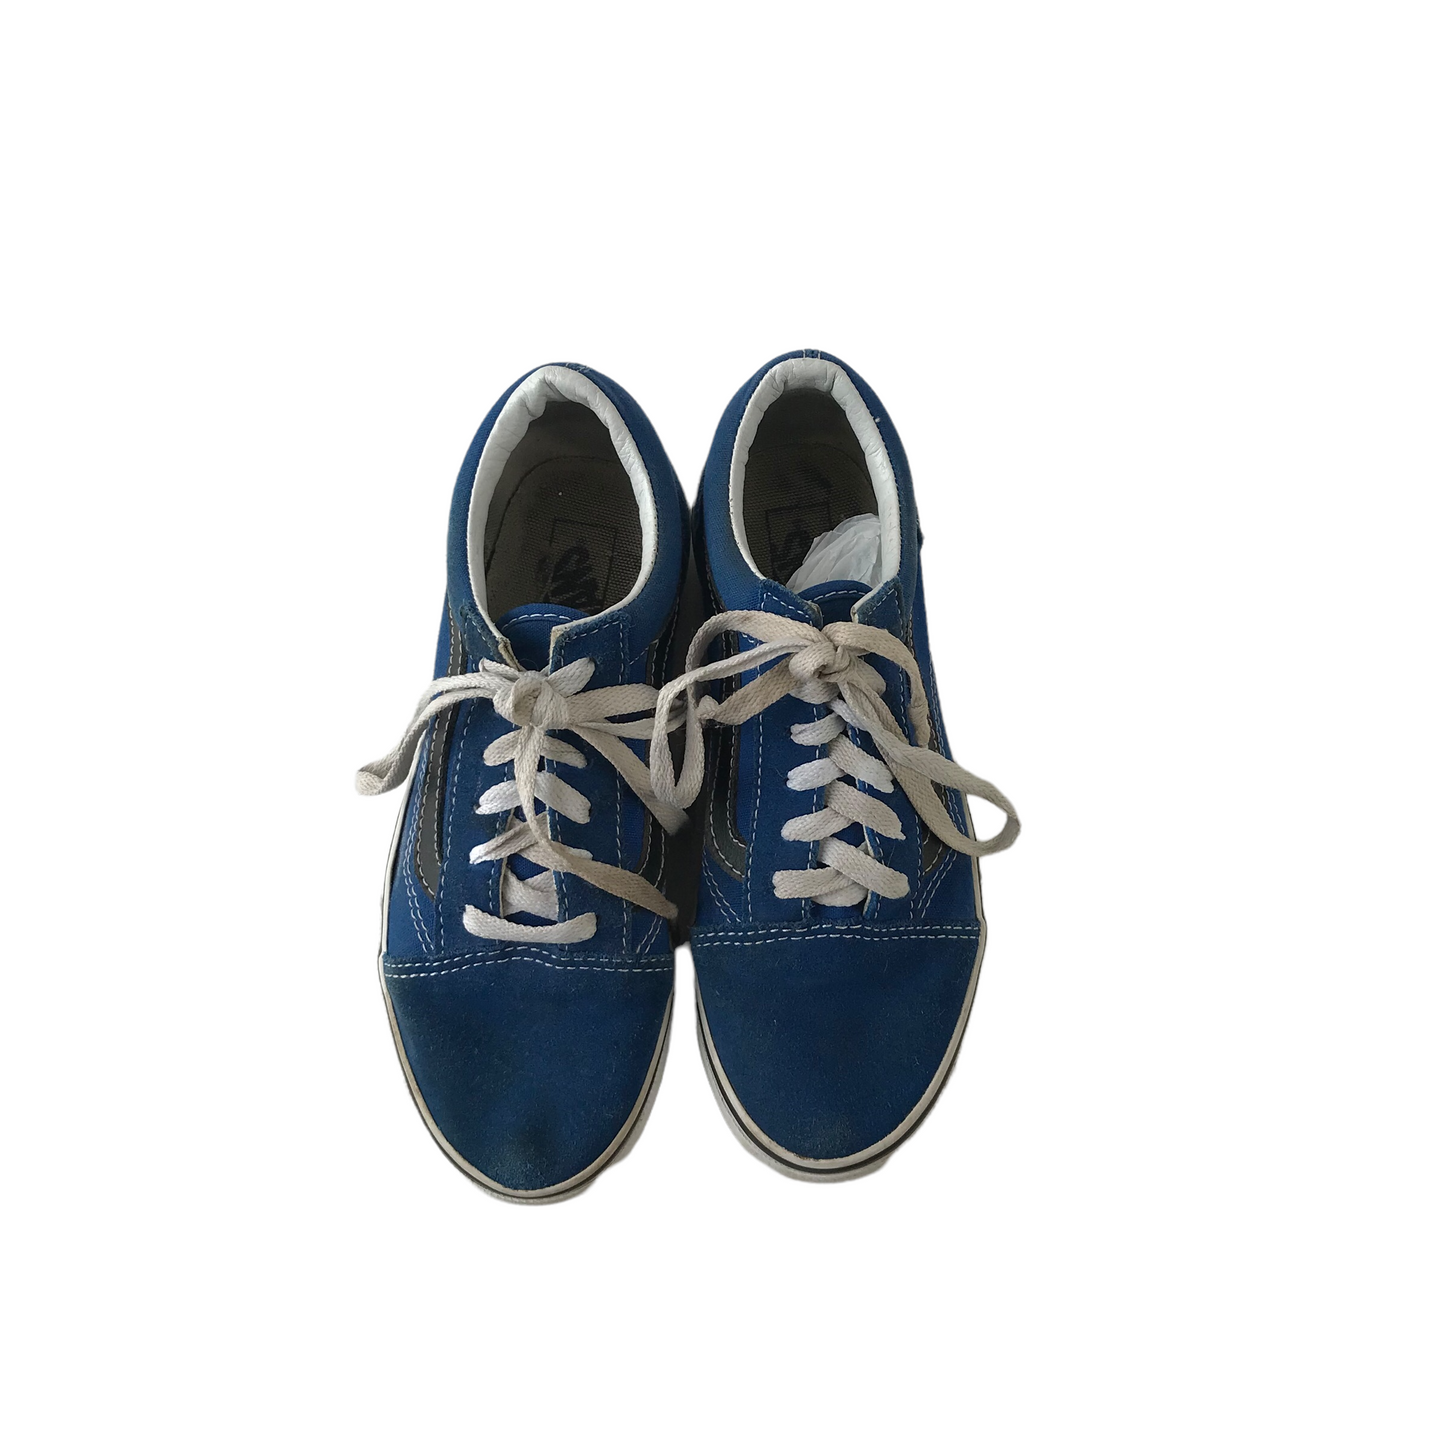 Vans Blue Trainers Size UK 2.5